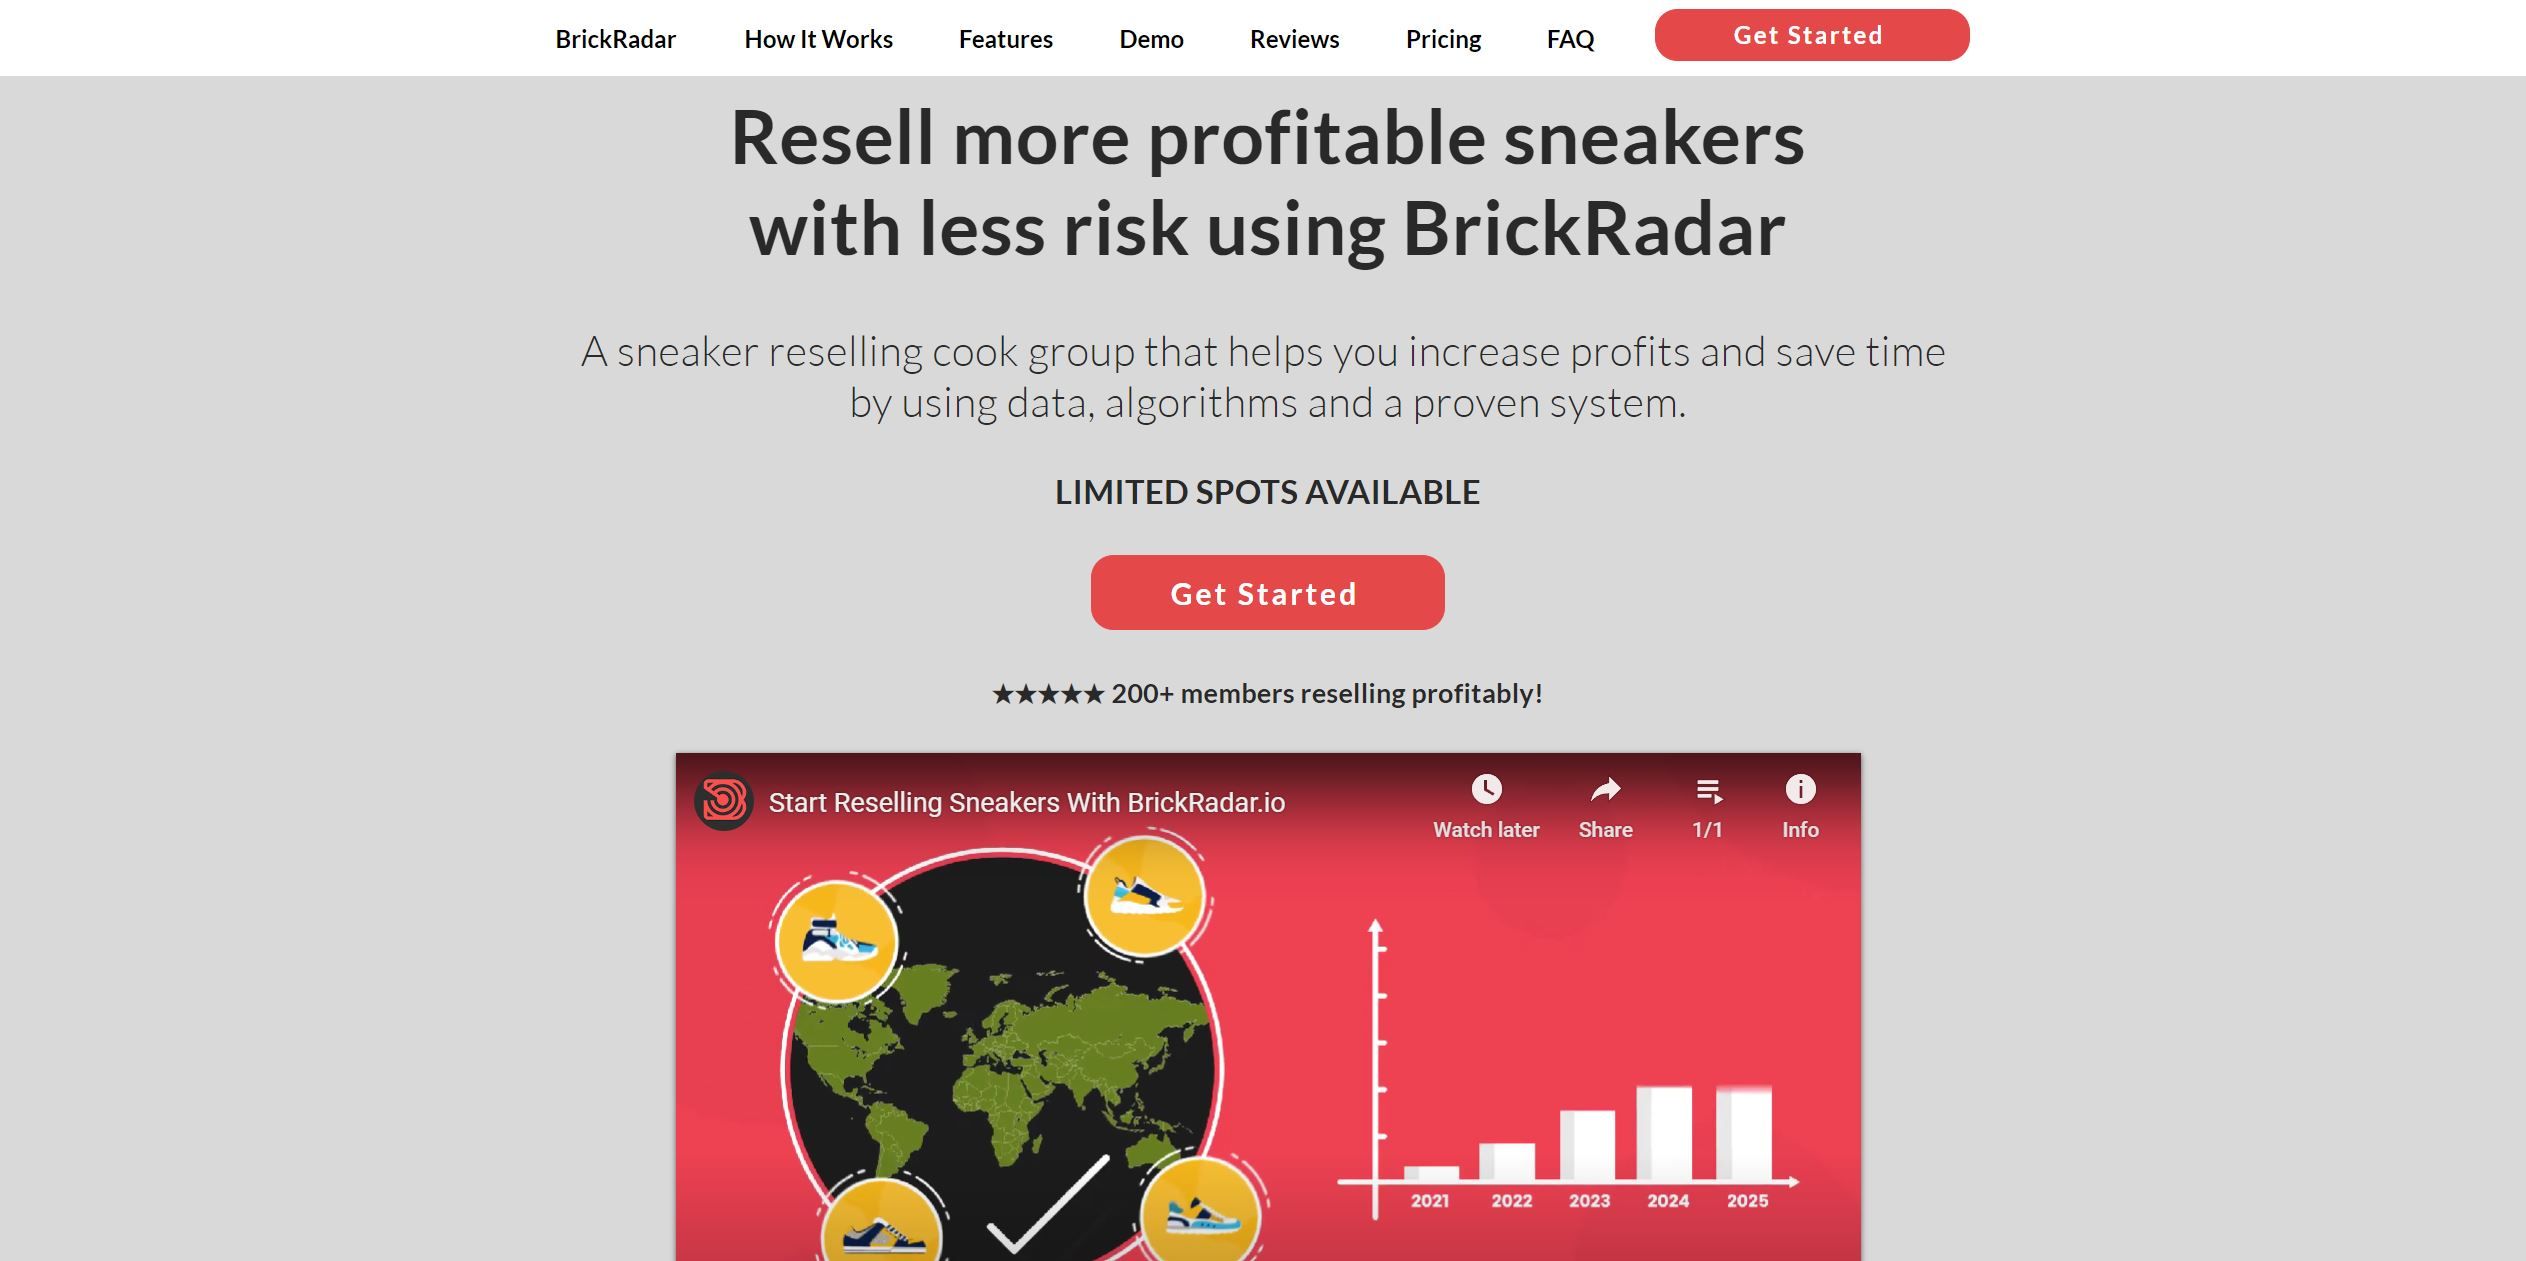 Post: BrickRadar